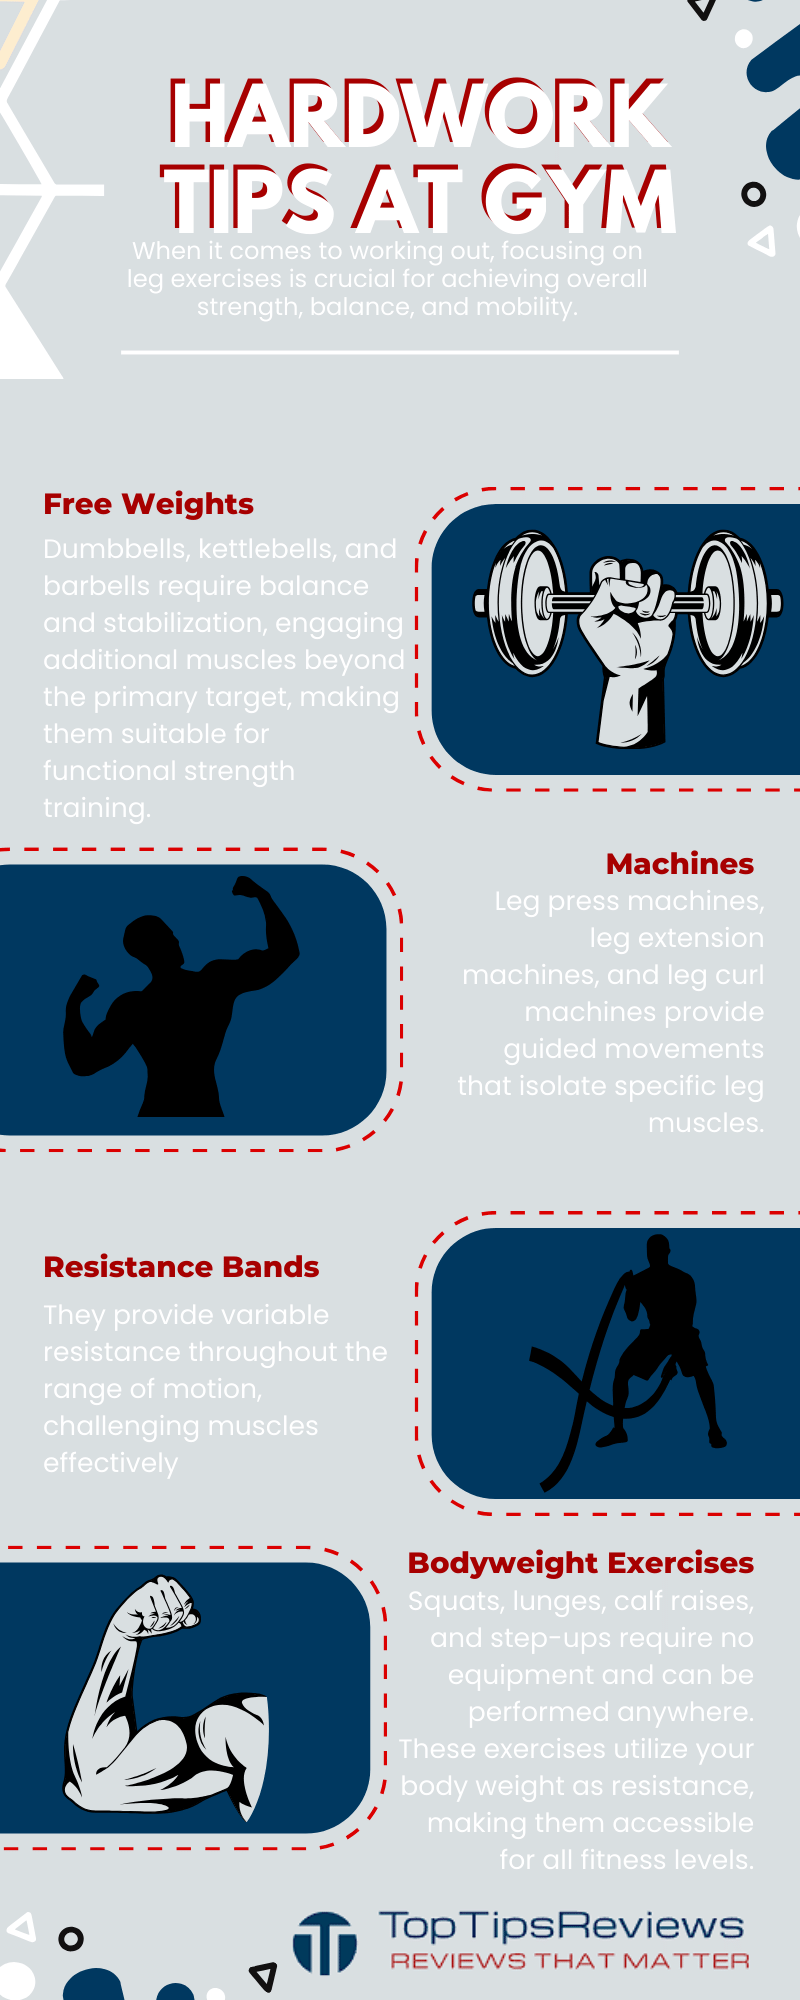 Exercise Equipment for Legs